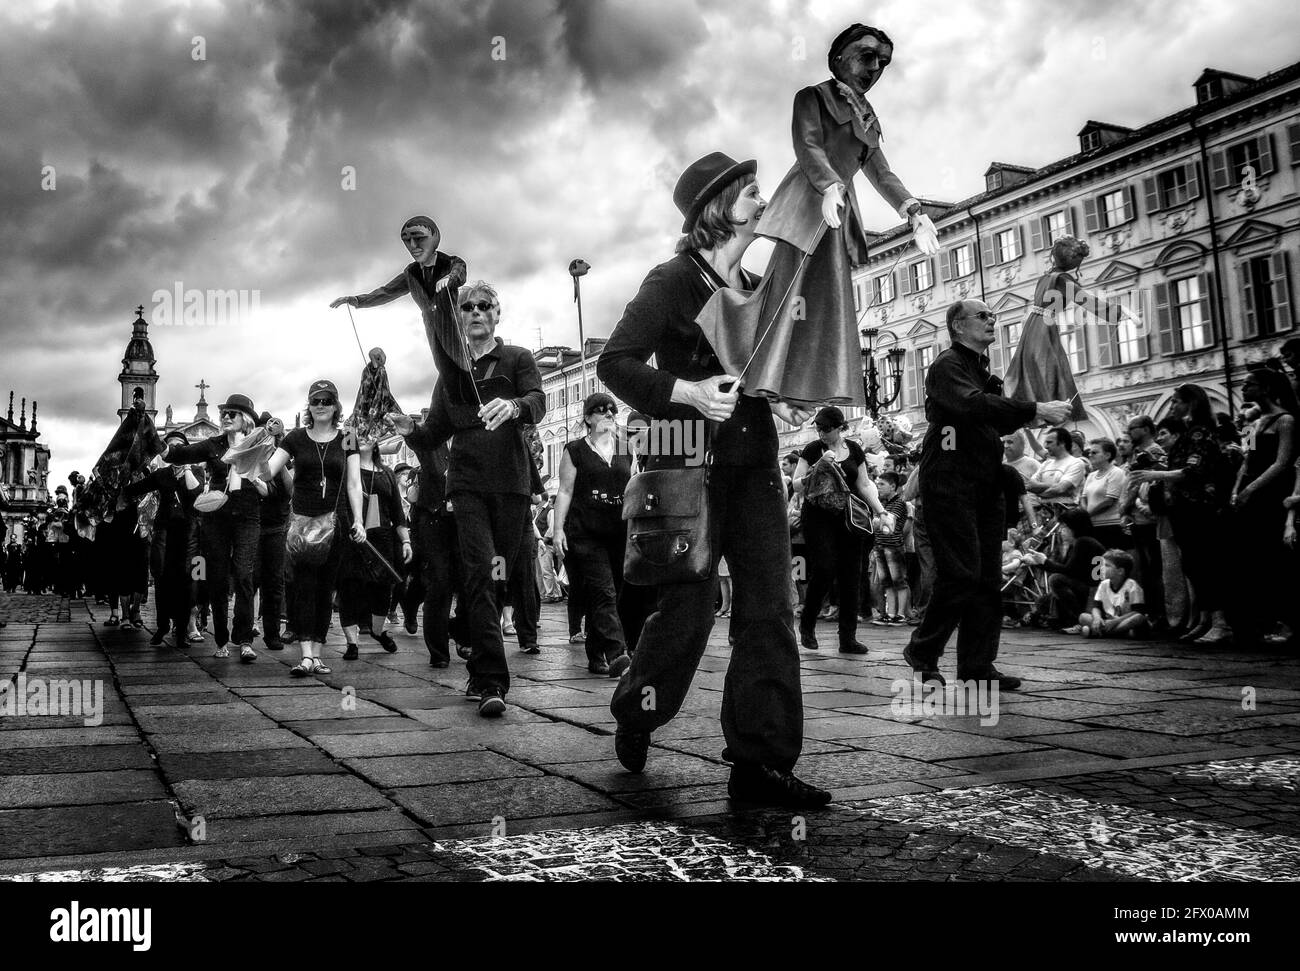 Sonntag, 6. Juli 2014 in Turin, beginnend von der Piazza S. Carlo.Torino Dance Festival, begann im Jahr 2014 mit der Biennale De la Dance in Lyon und einem großen Gemeinschaftsprojekt, der Schwerpunkt dieses Berichts, die Defilè , eine große Parade, die alle zwei Jahre eröffnet, Die Biennale de la Dance in Lyon. Defilè die Teilnahme zwischen 5 Tausend und 6 Tausend nicht-professionelle Tänzer und zum ersten Mal wird die Veranstaltung in Italien stattfinden . Bei der Parade werden über 600 Marionetten und Marionetten von den Teilnehmern manipuliert werden Stockfoto